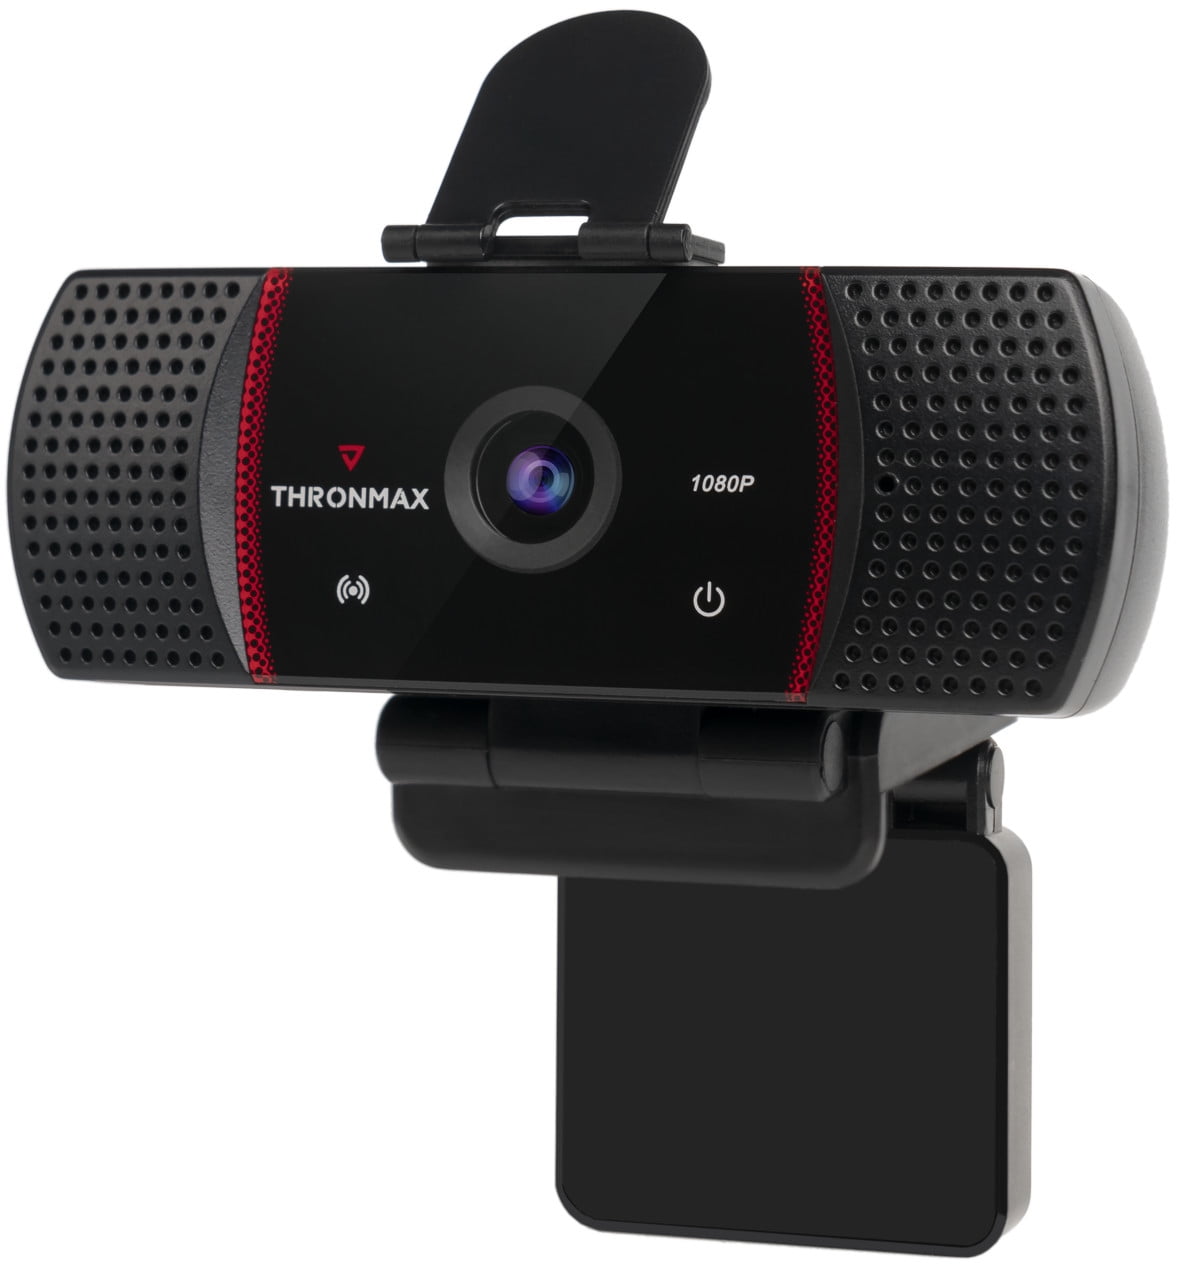 basanta raj sigdel recommends max george webcam video pic